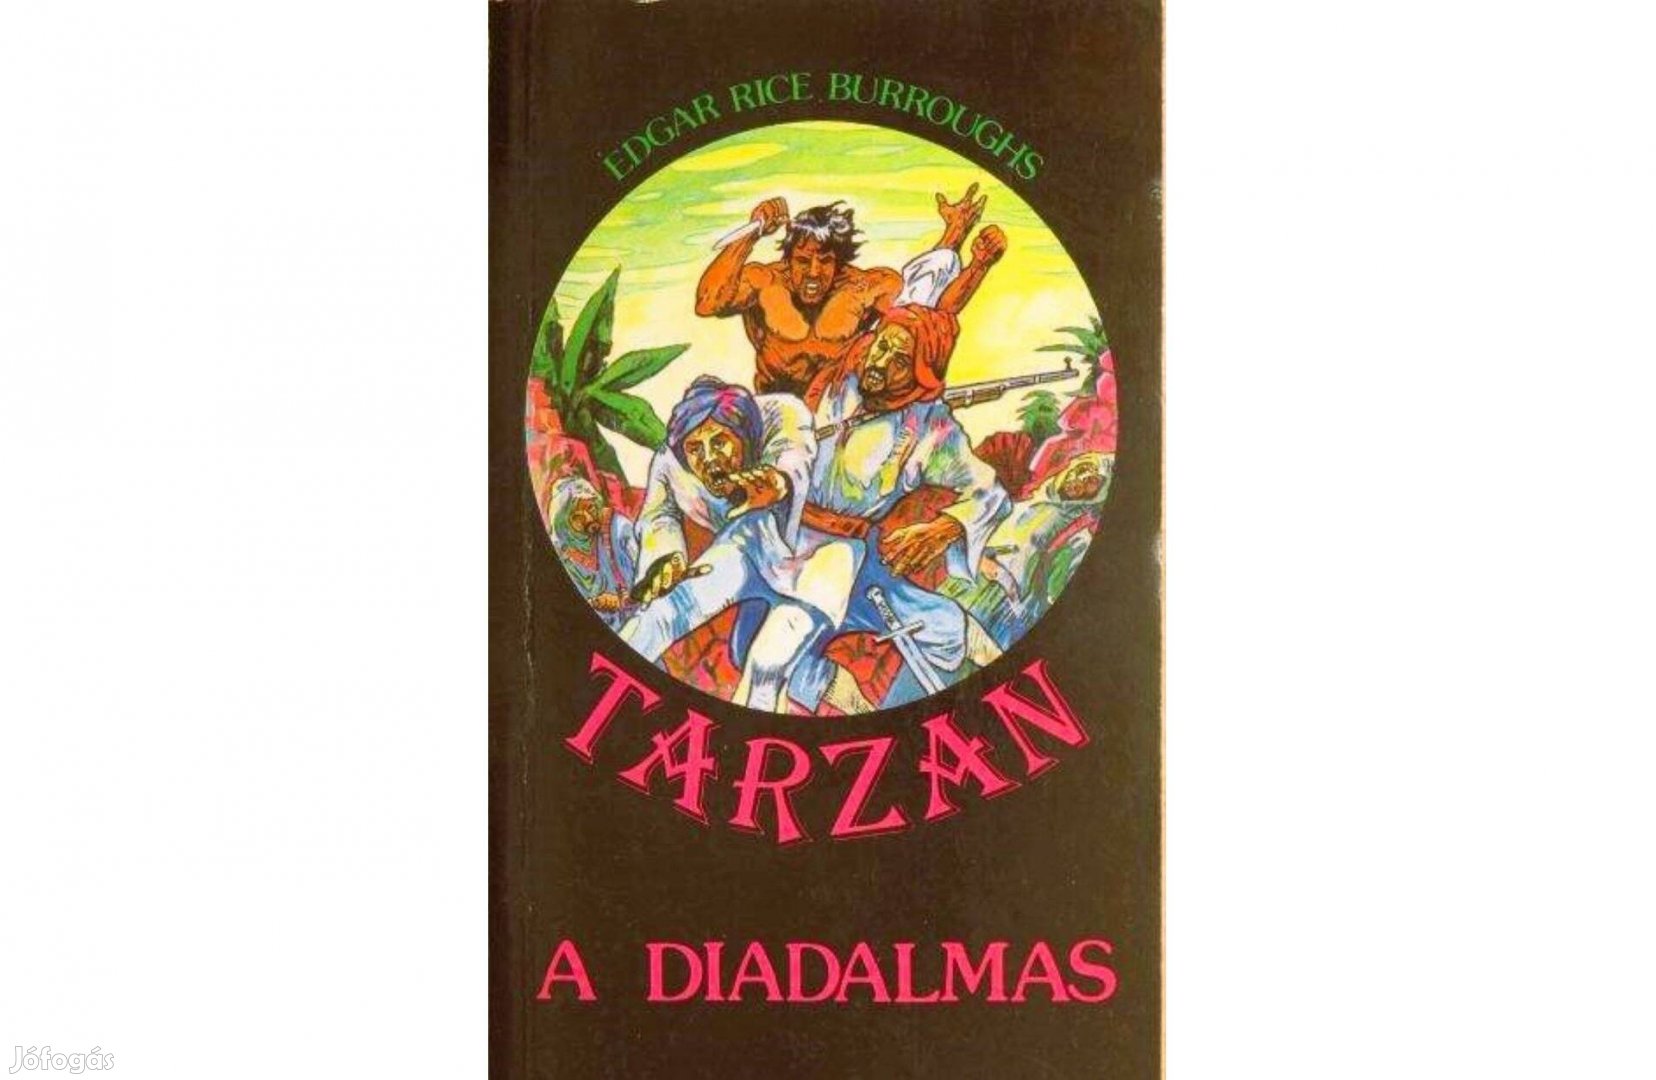 Tarzan könyvek: 6 db / 167 Ft/db / Egyben a csomag ára: 1.000 Ft